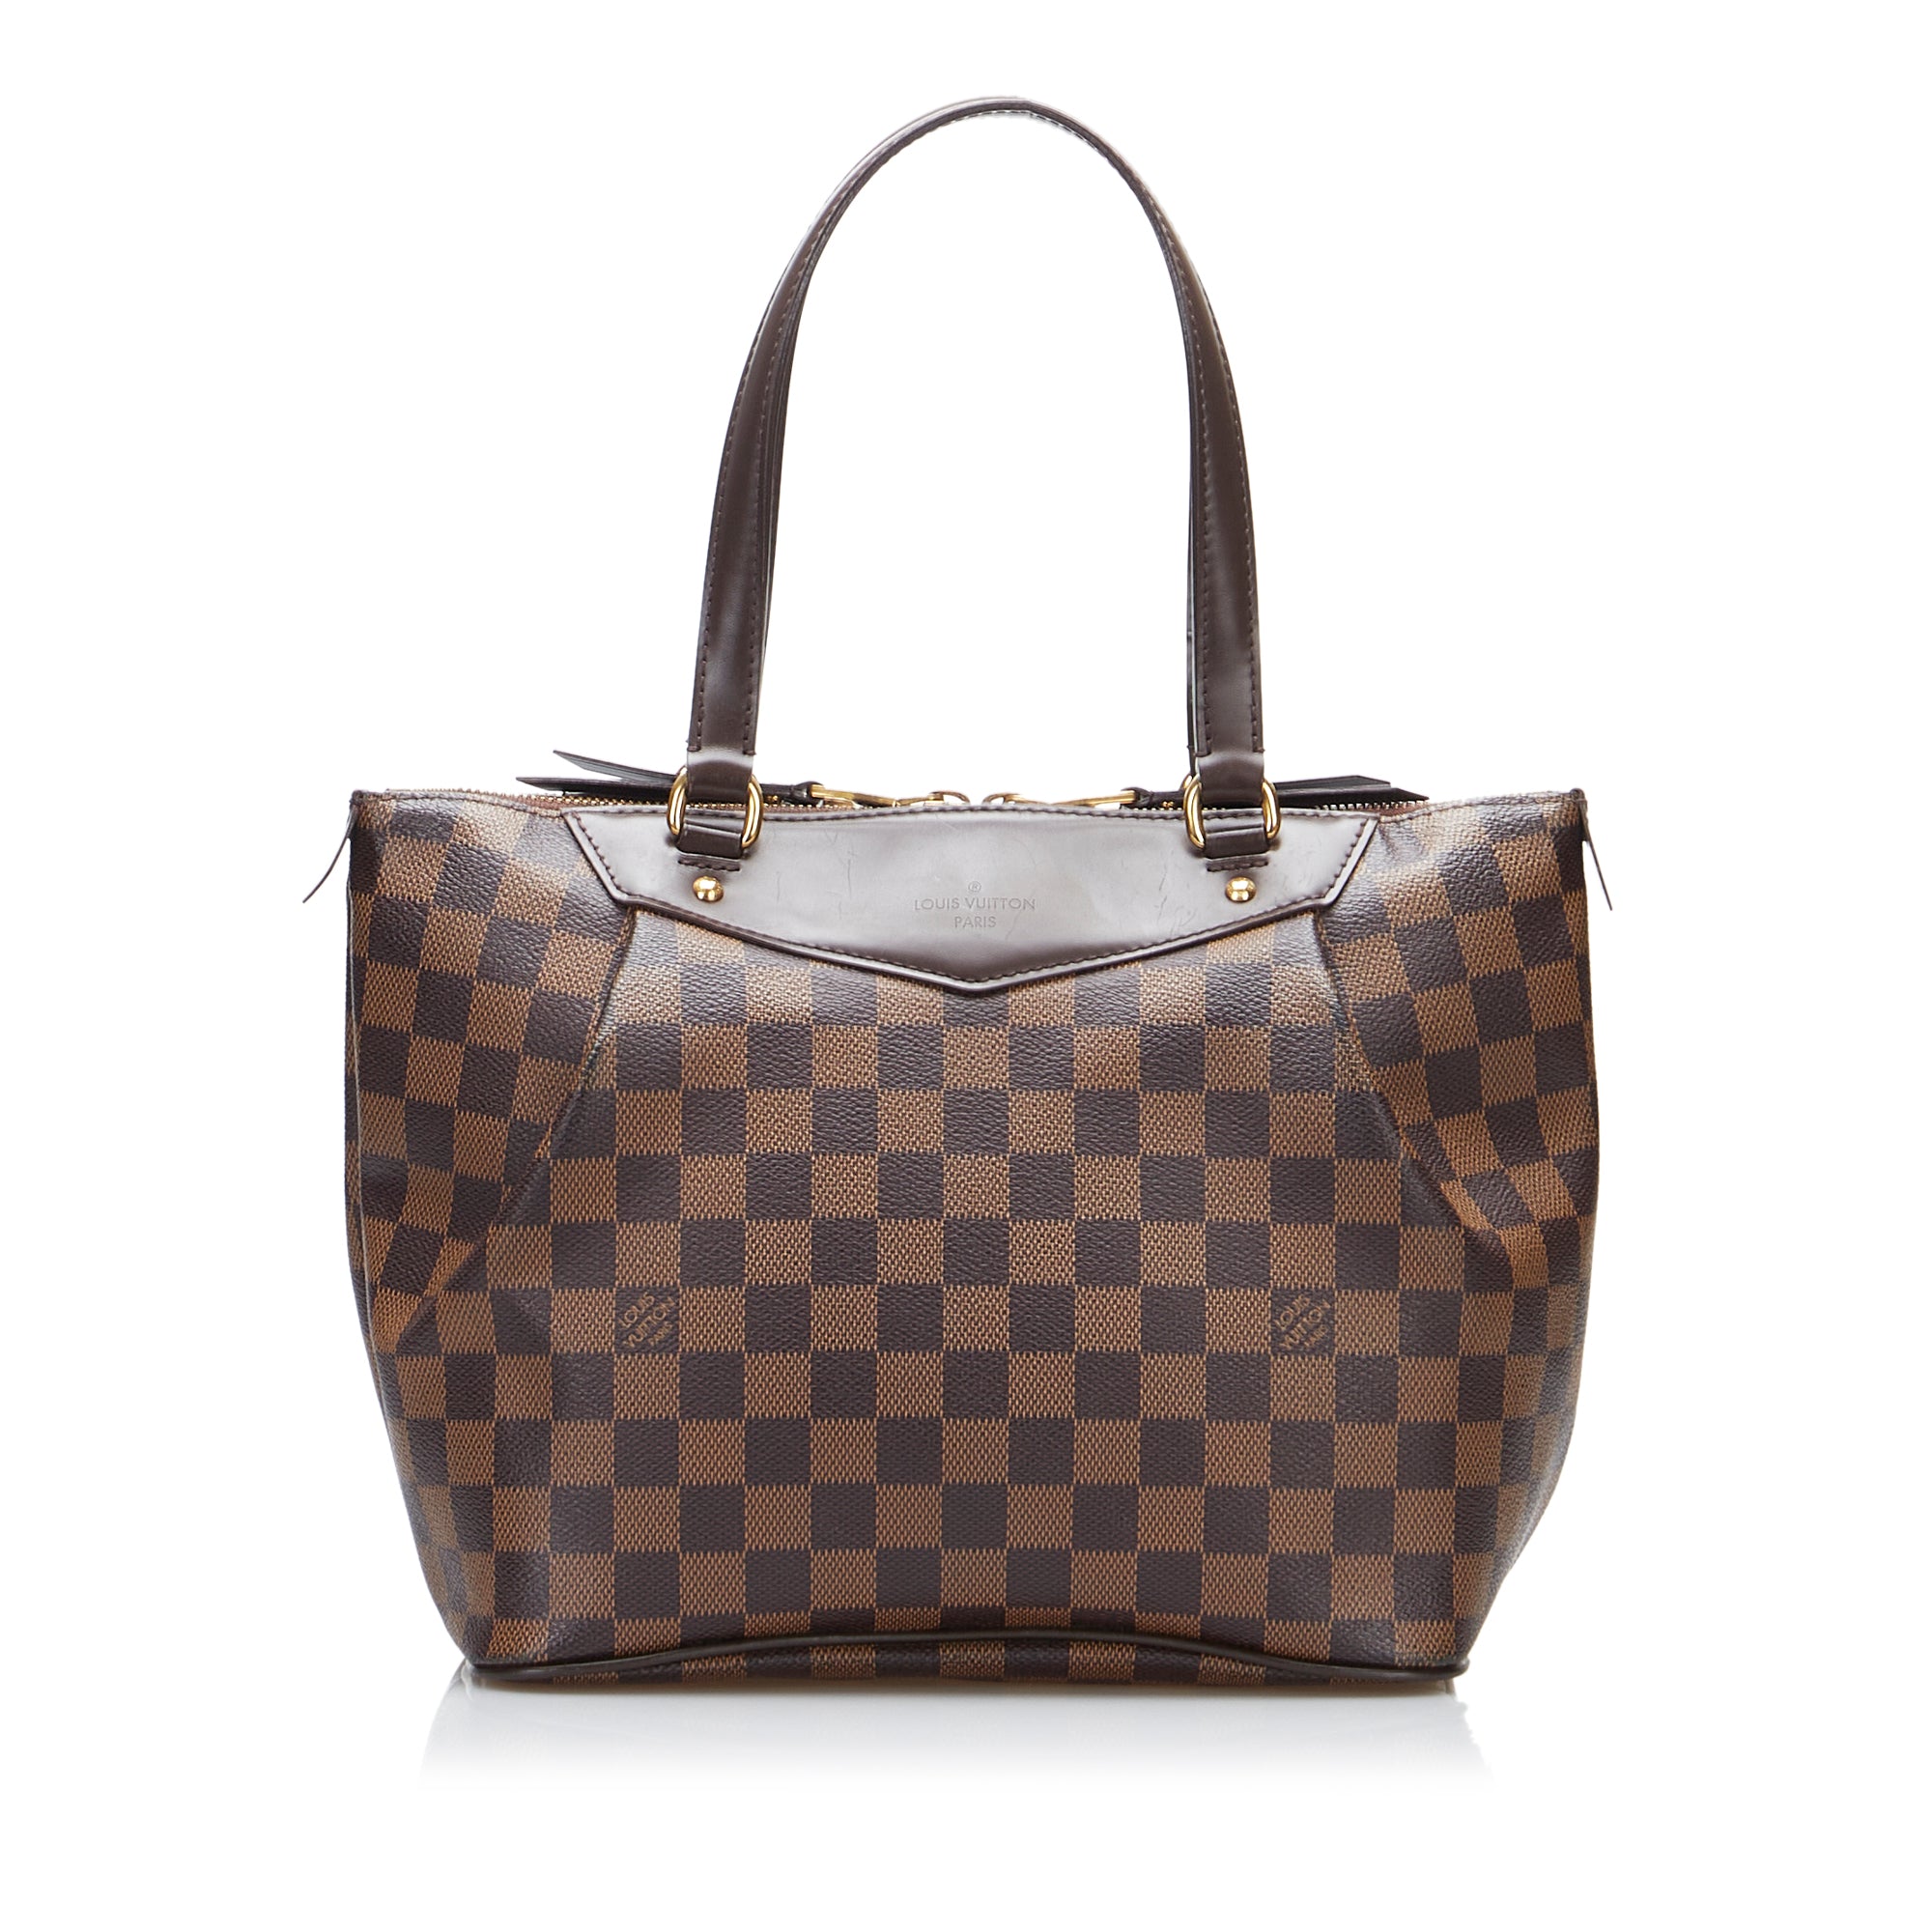 Louis Vuitton - Authenticated Saint-Louis Clutch Bag - Leather Brown Plain for Women, Never Worn